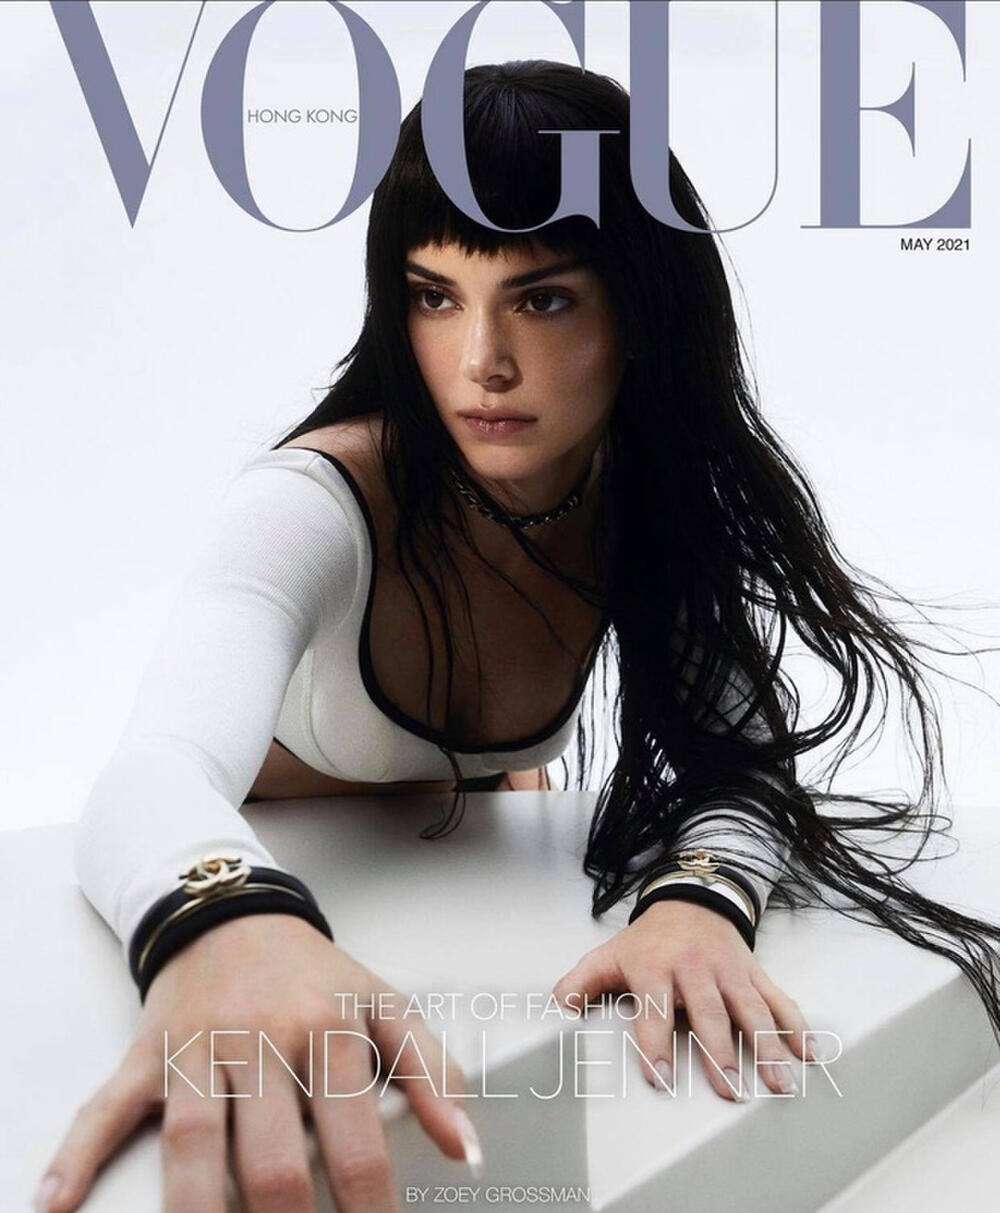 Xuyên suốt bộ ảnh, Kendall Jenner chỉ giữ nguyên một nét mặt, một biểu cảm 'tâm bất biến giữa dòng đời vạn biến'.